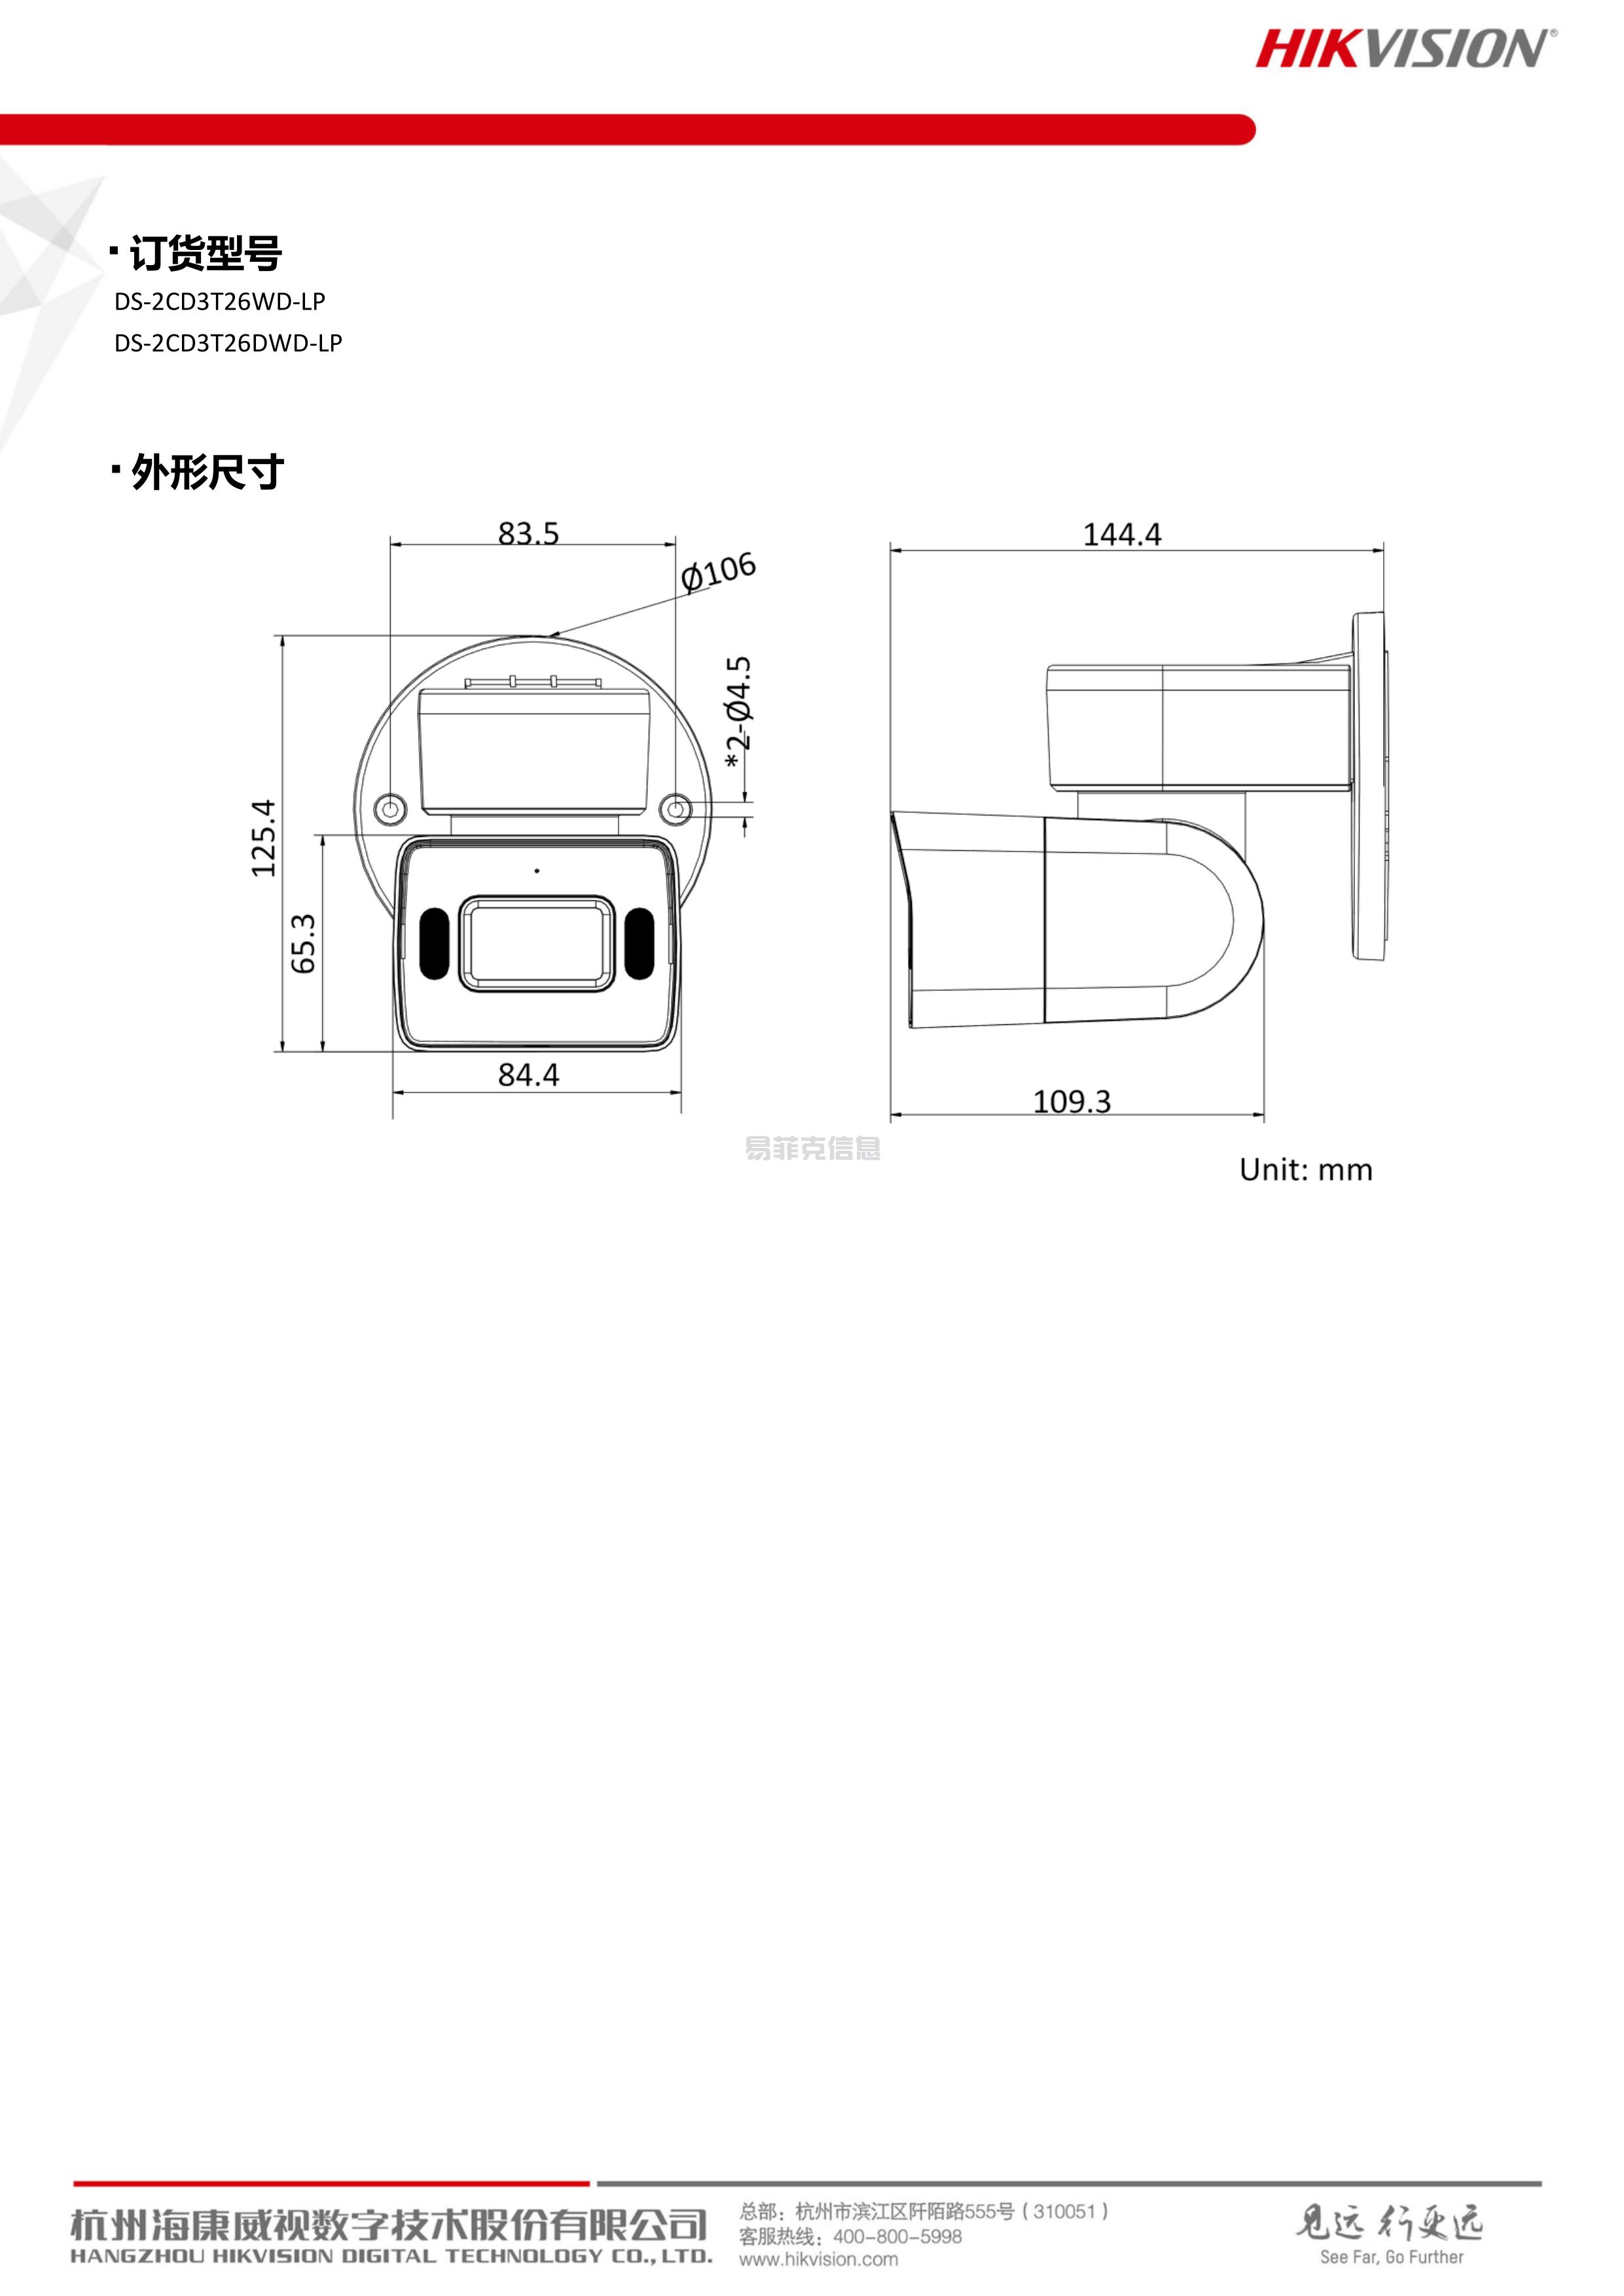 PT白光全彩筒机/DS-2CD3T26DWD-LP(图4)